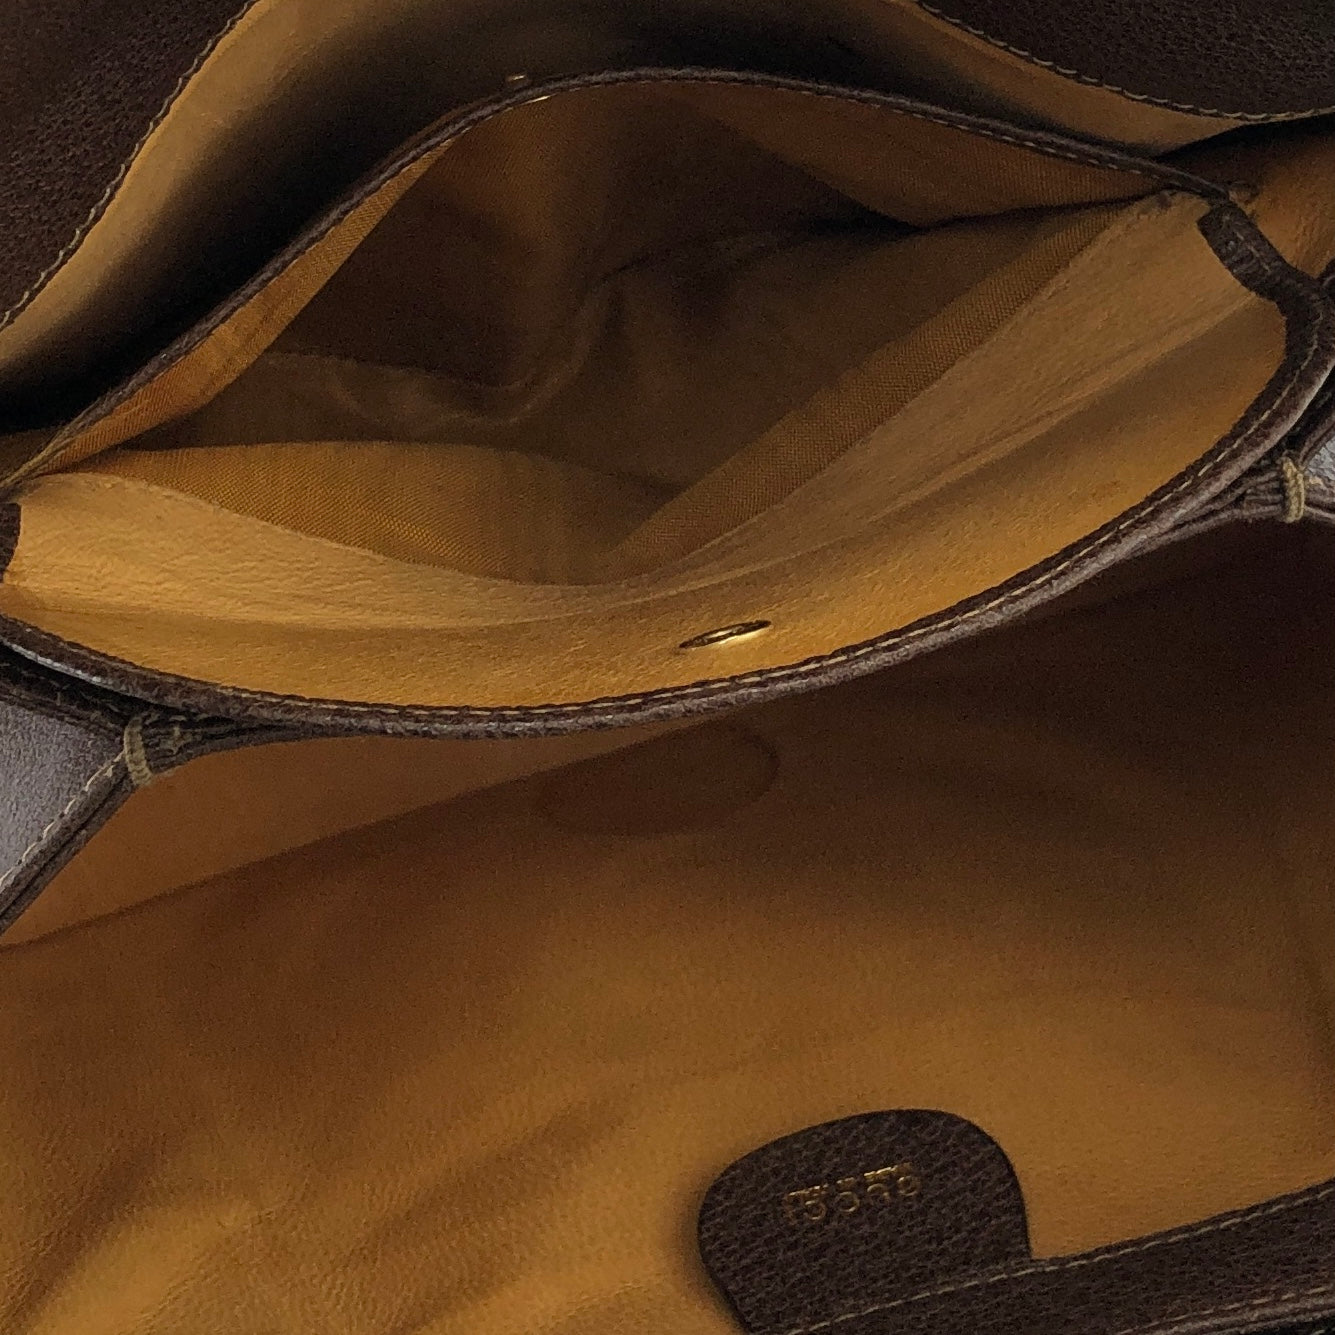 GUCCI Bamboo Turn lock Two-way Handbag Shoulder bag Brown Vintage Old GUCCI cggk5v